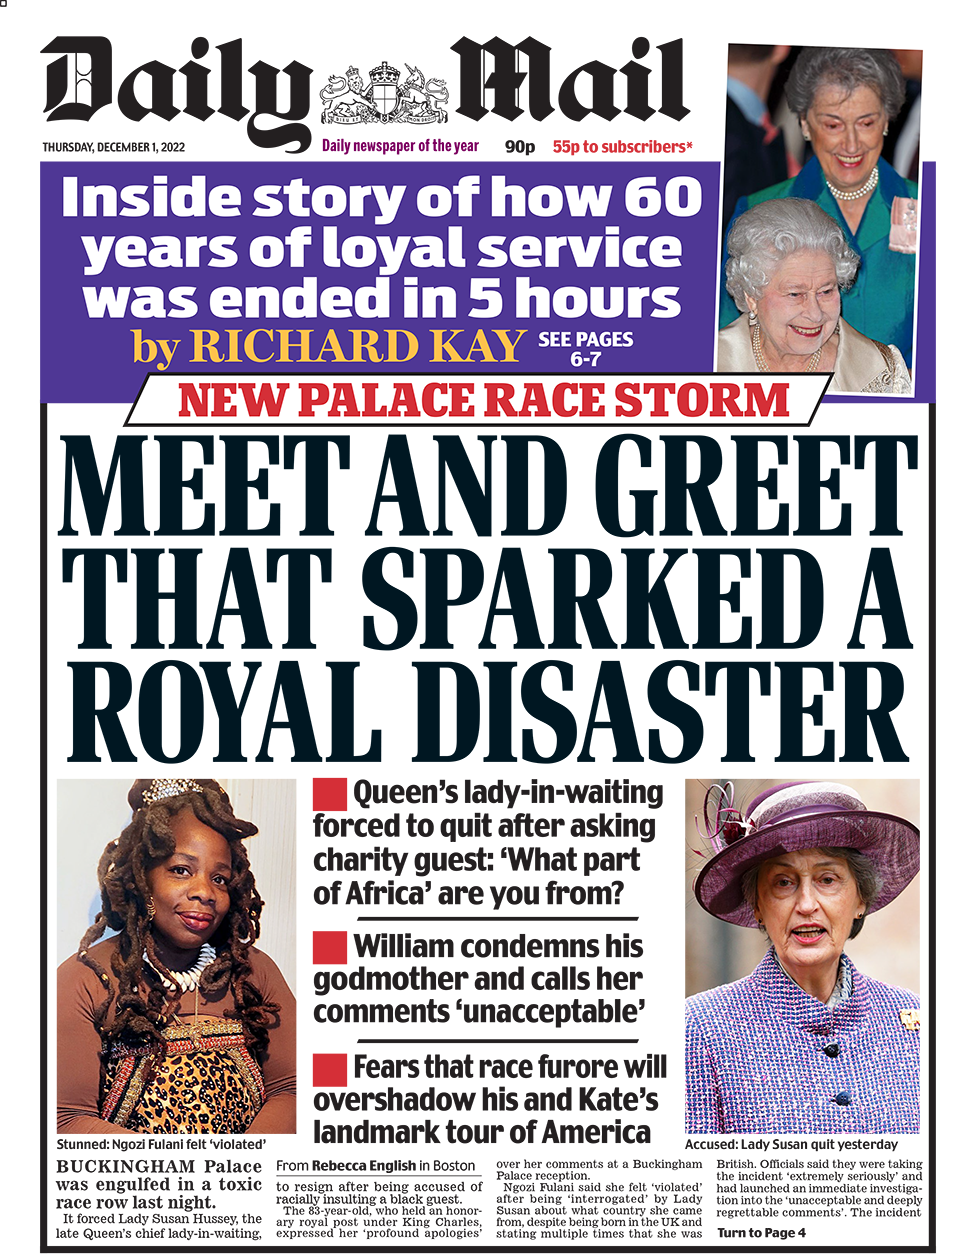 Заголовок на первой странице Daily Mail гласит: «Встреча и приветствие, которое спровоцировало королевскую катастрофу»